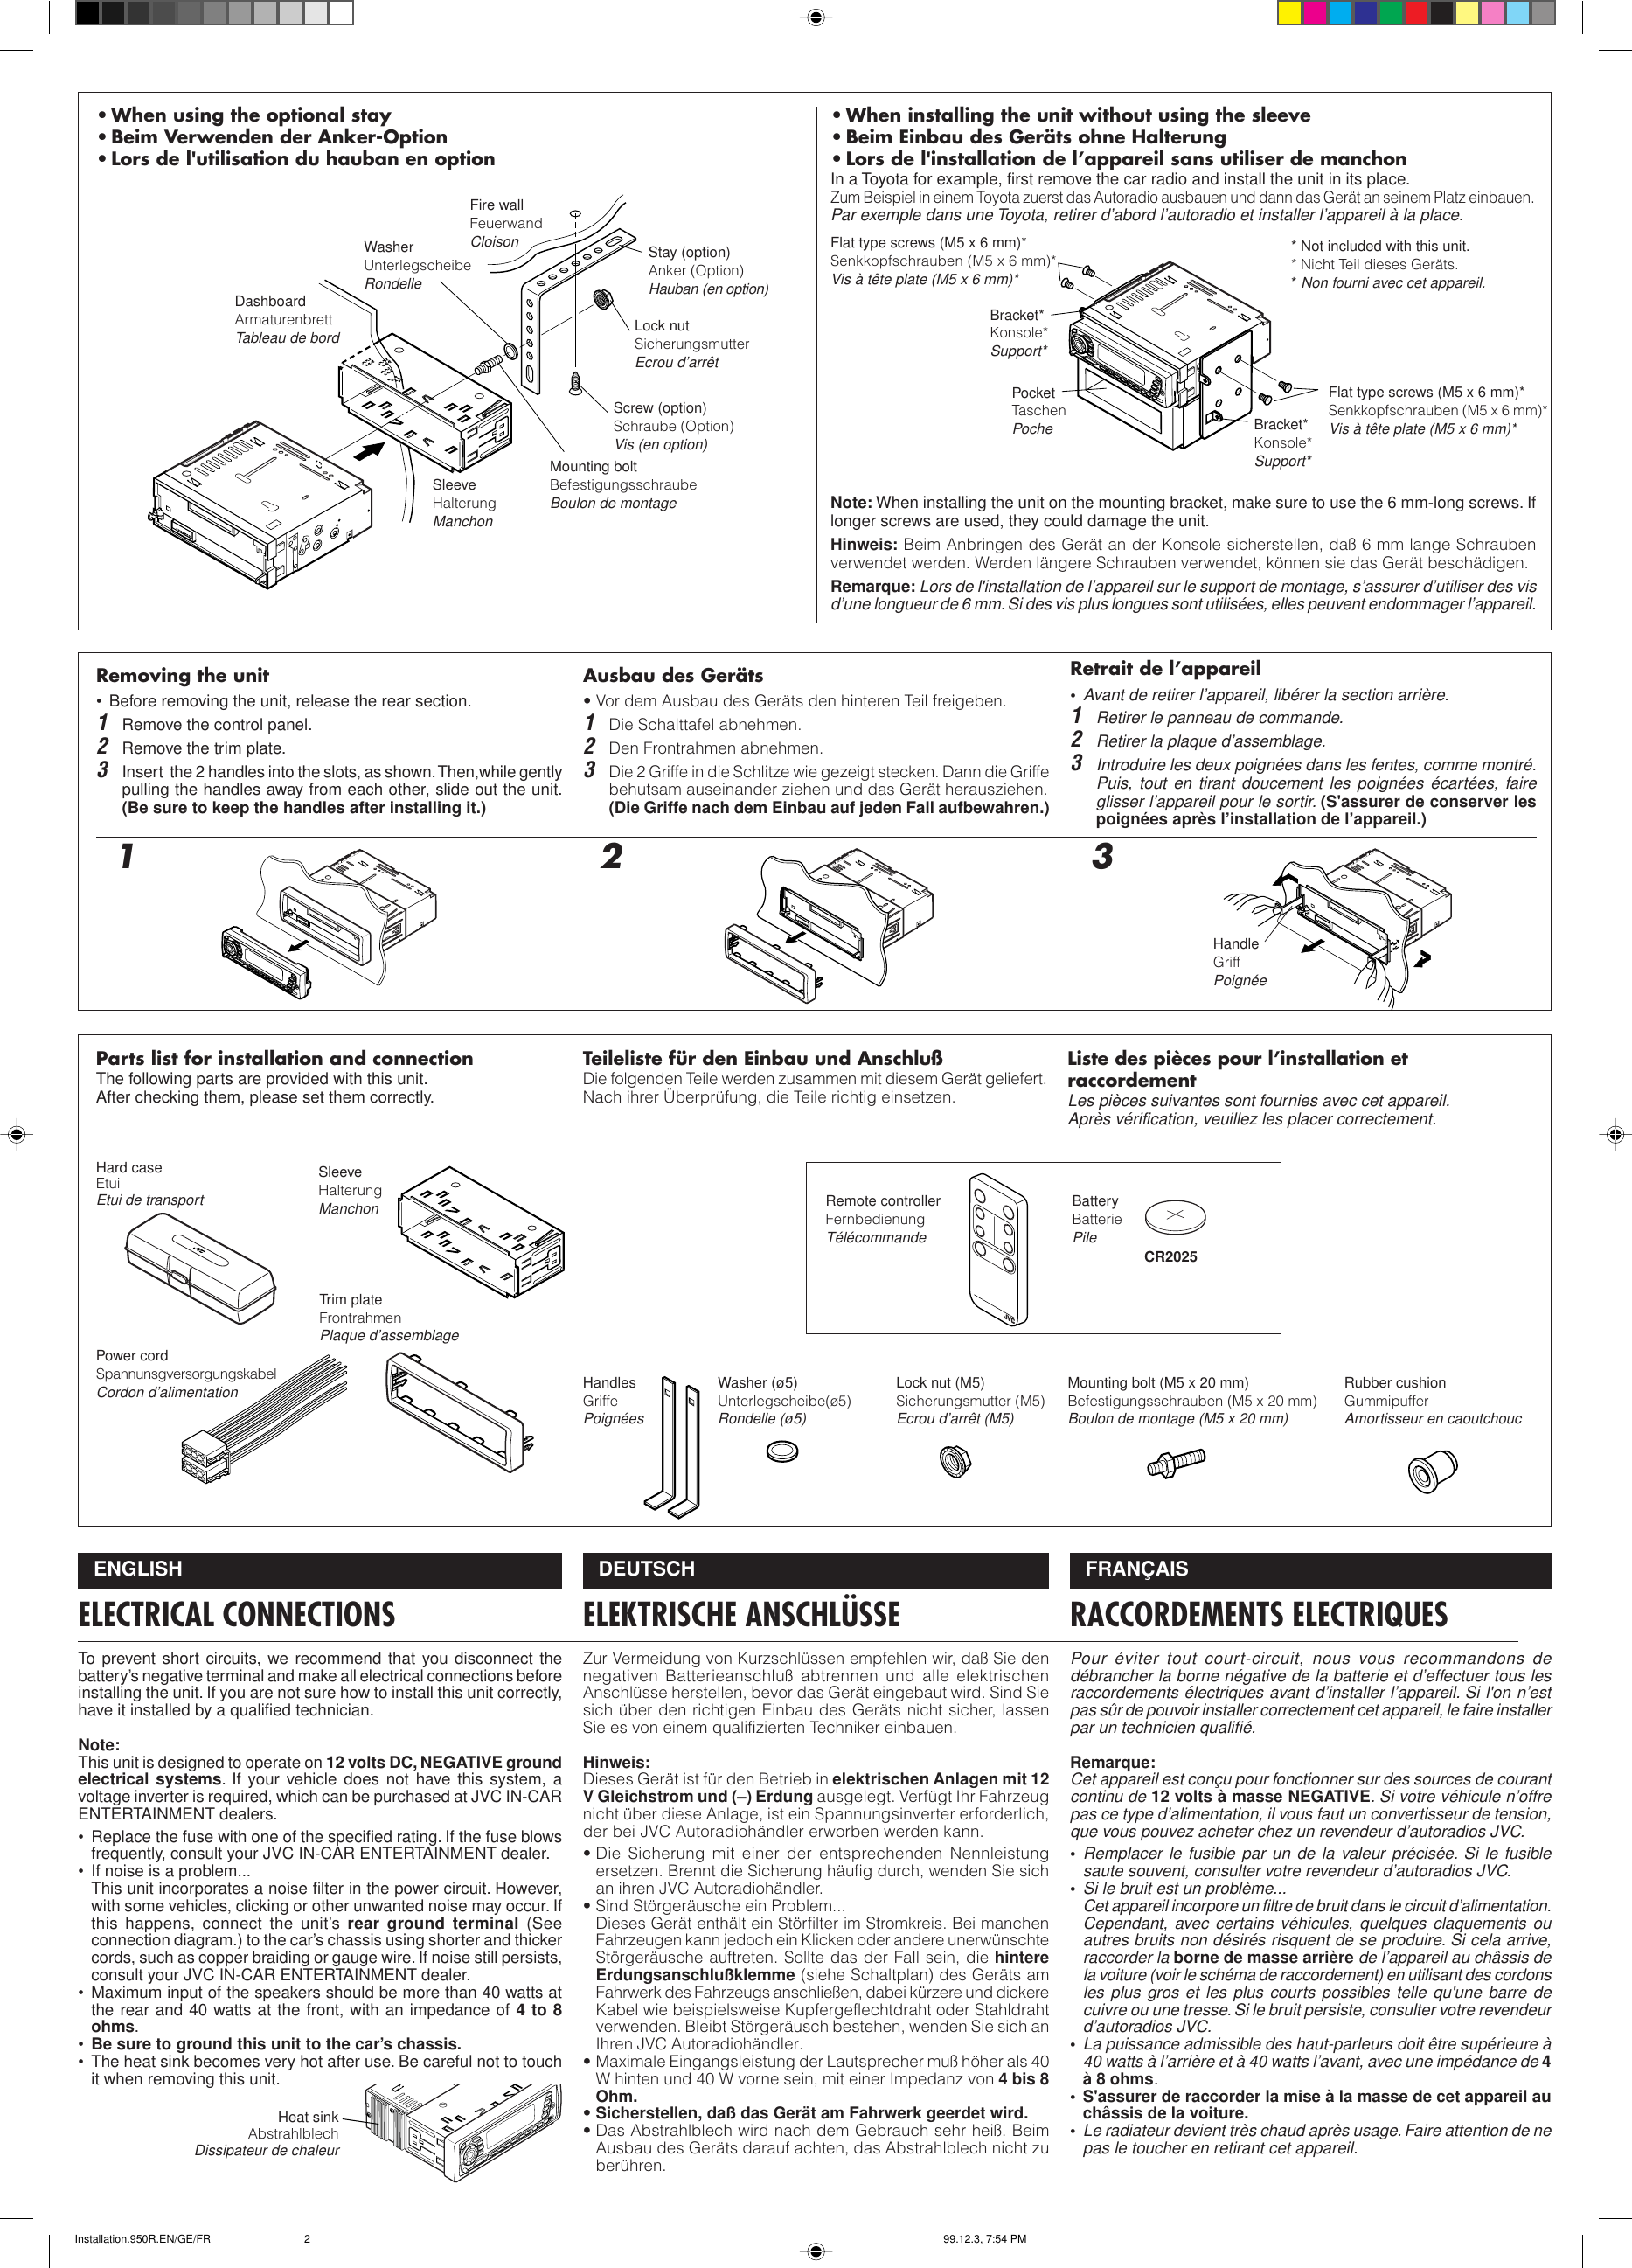 Page 2 of 4 - JVC KS-FX950R User Manual FSUN3124-T211